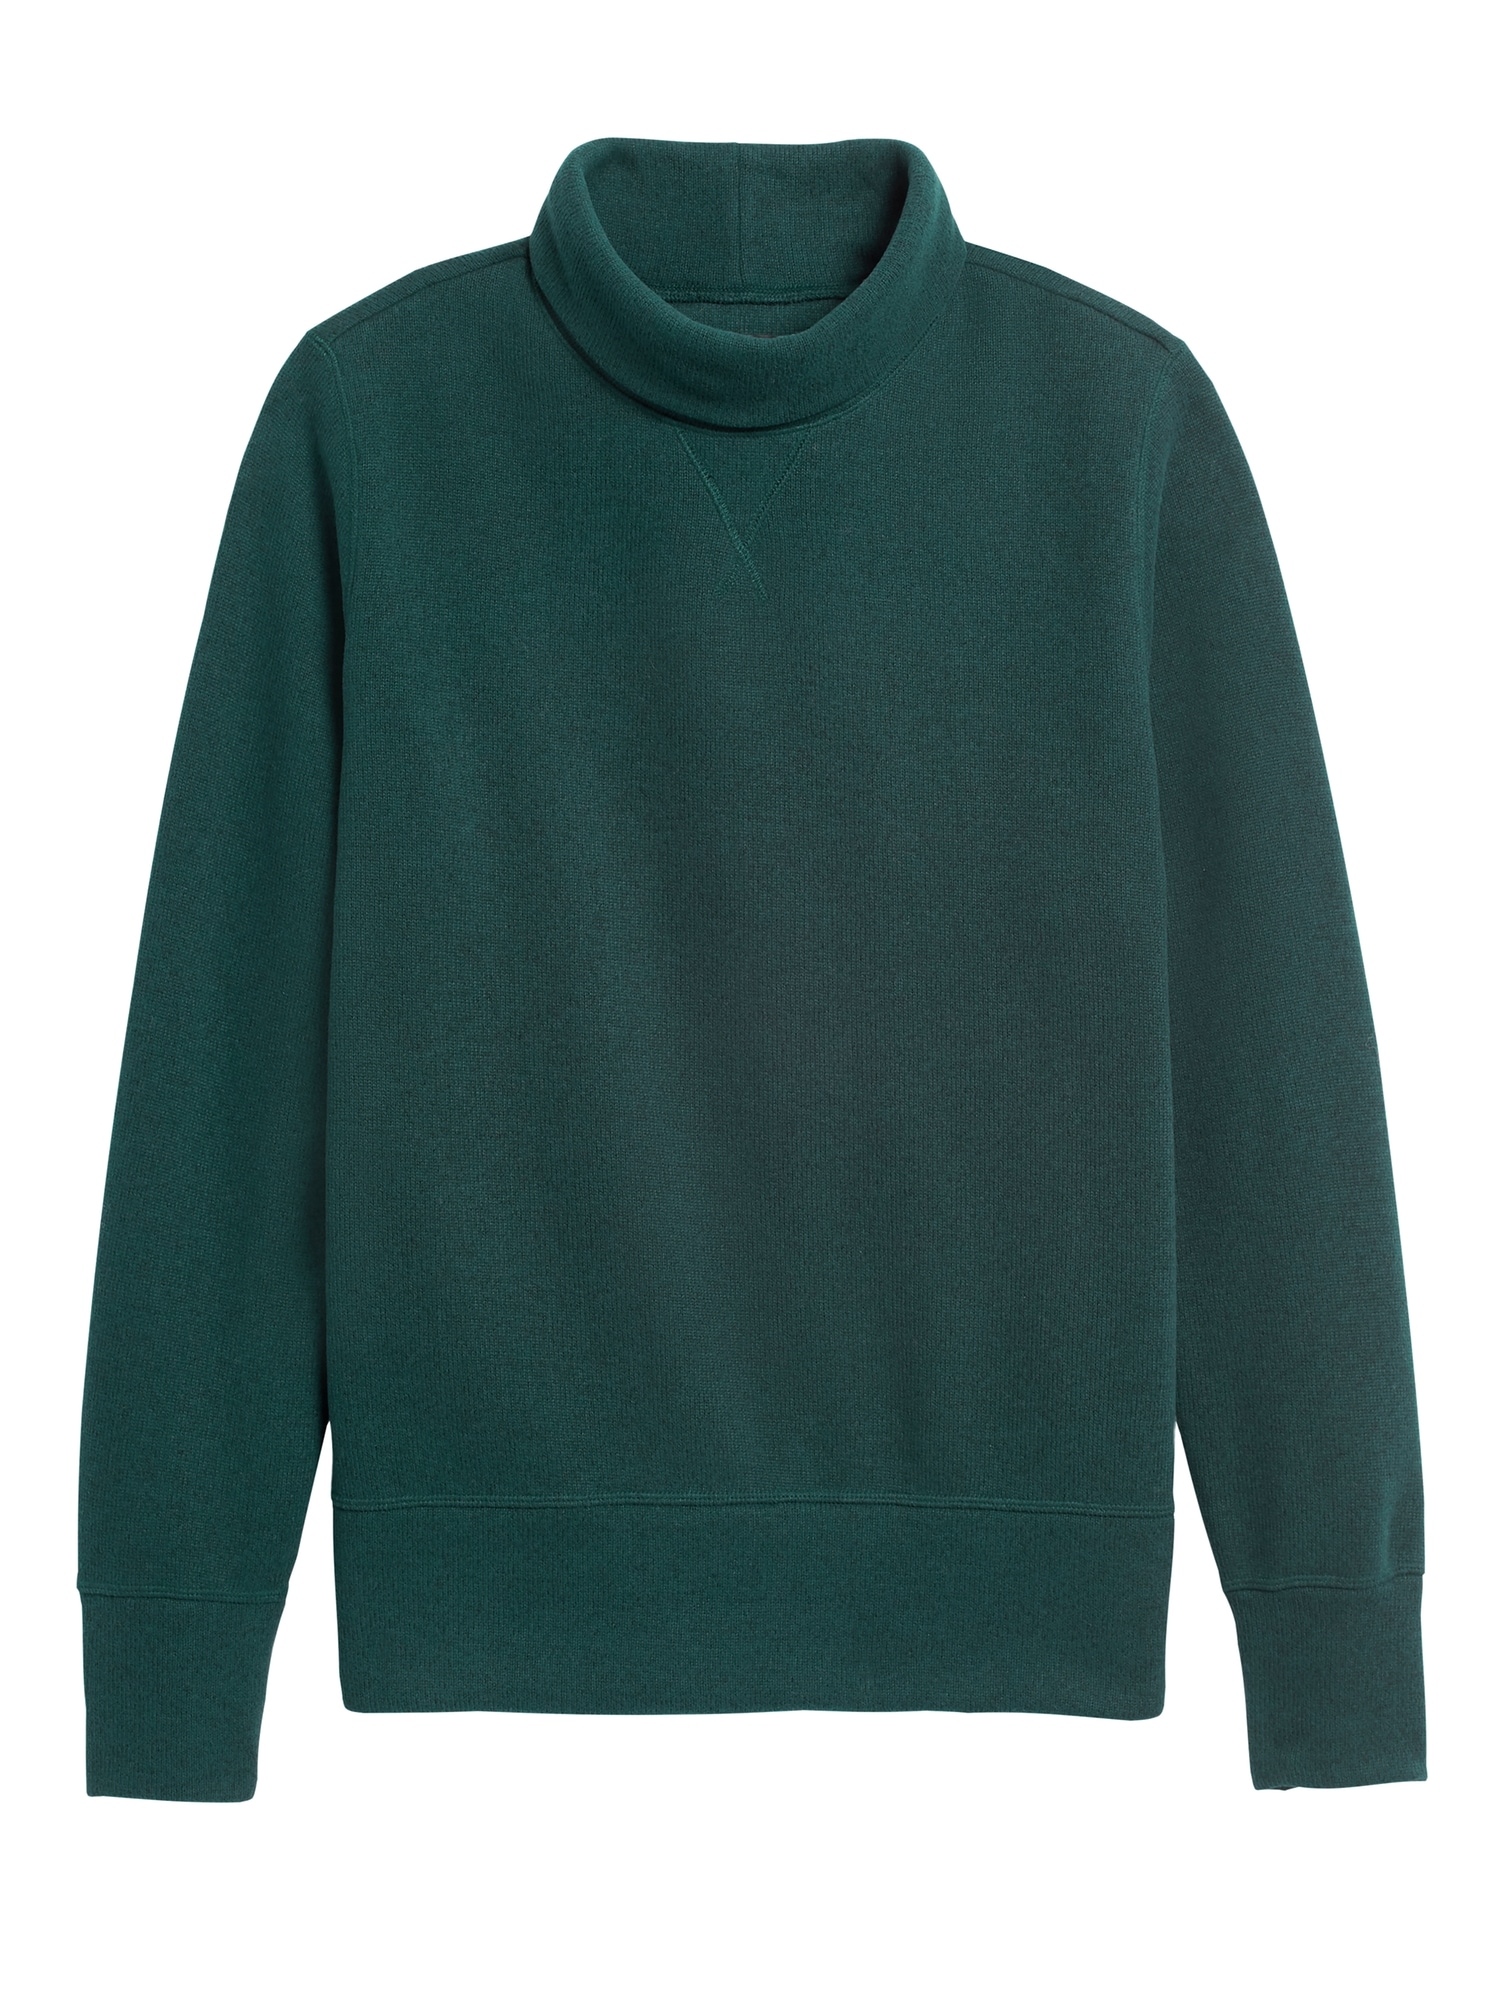 Polartec® Sweater Fleece Turtleneck Sweatshirt